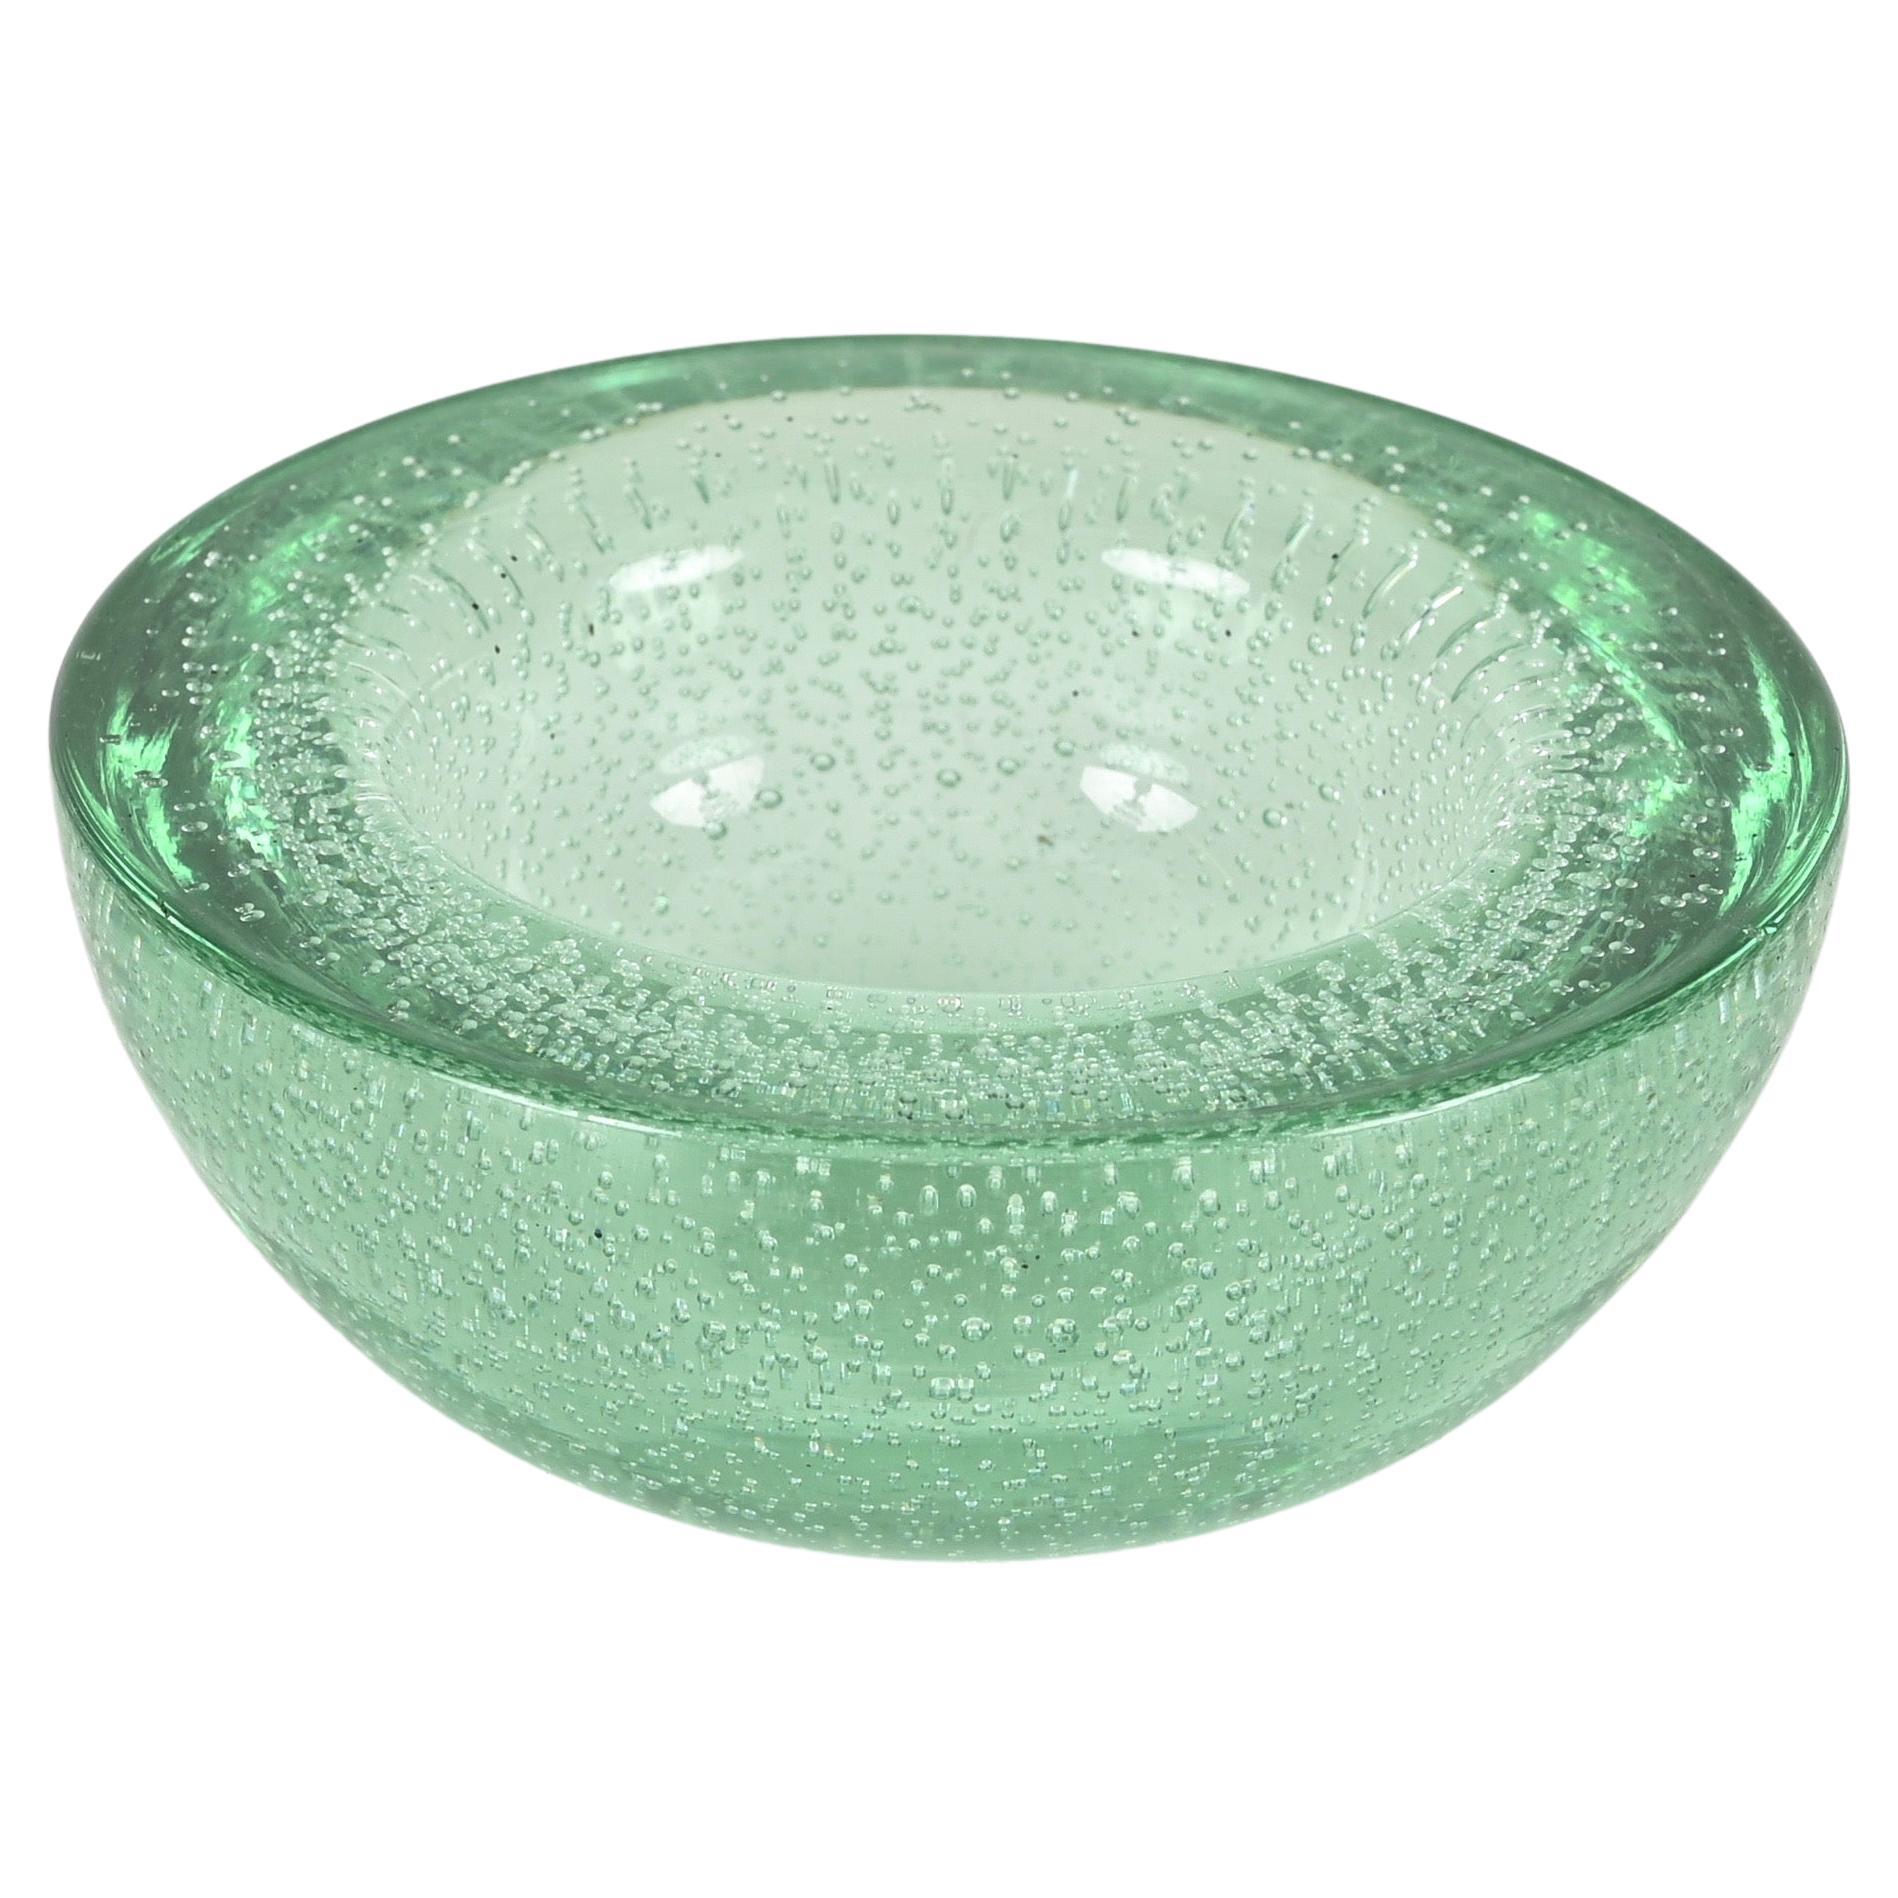 Aqua Green Murano "Bullicante" Glass Bowl or Ashtray, Italy, Barovier 1960 For Sale